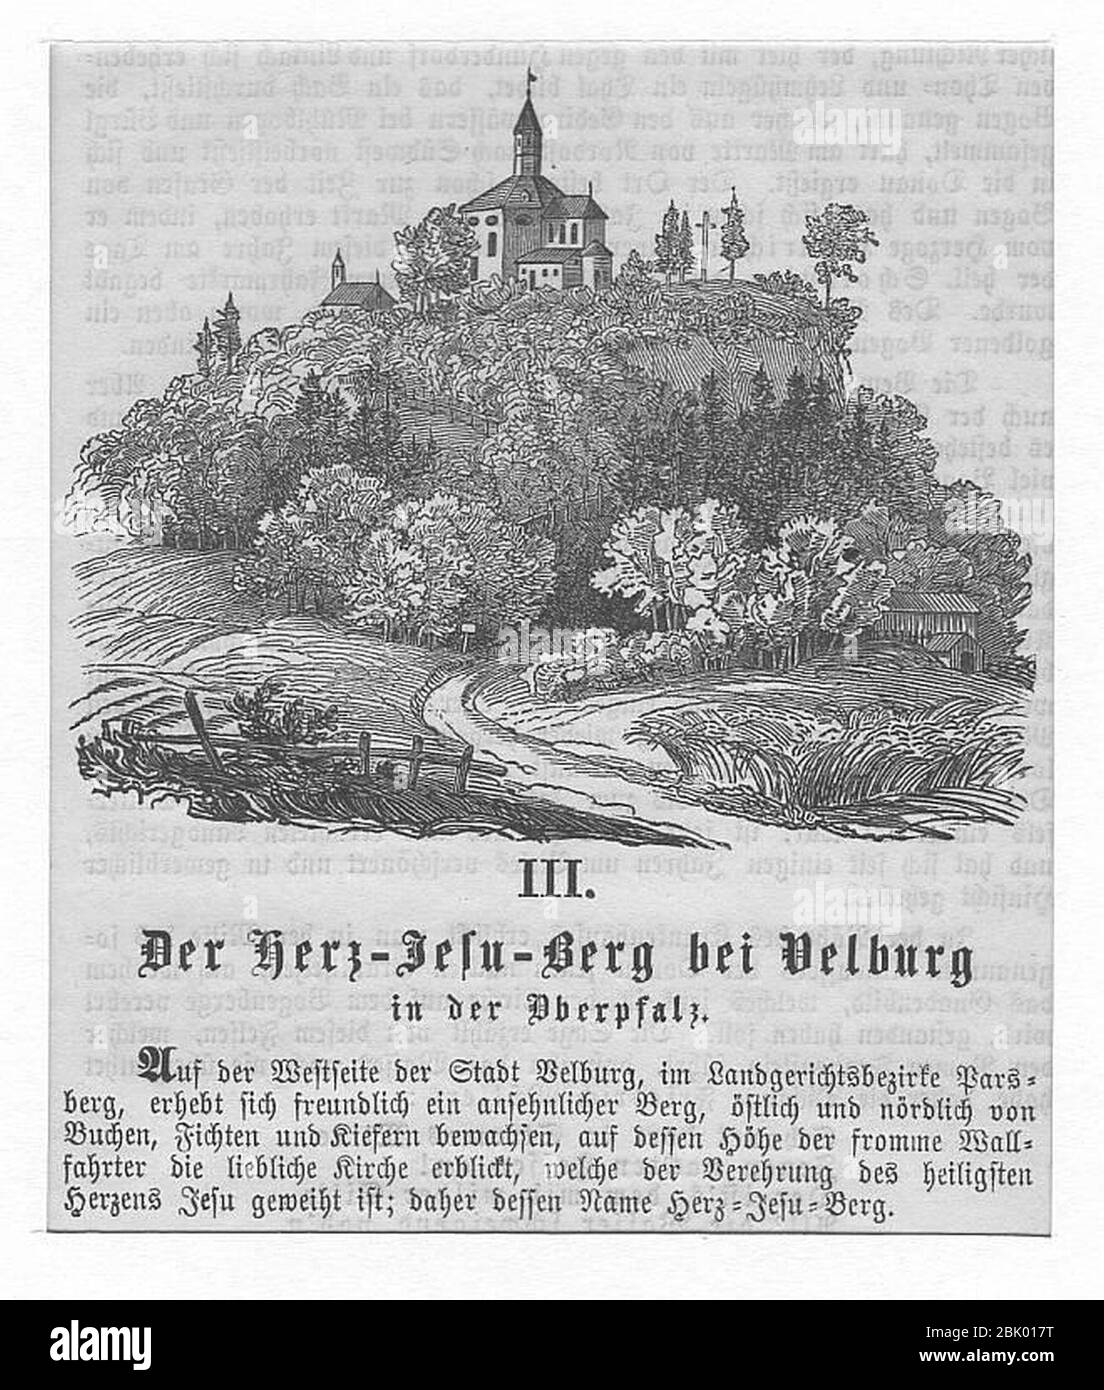 Holzstich - Velburg - Wallfahrtskirche Herz-Jesu-Berg - um 1847 Stock Photo